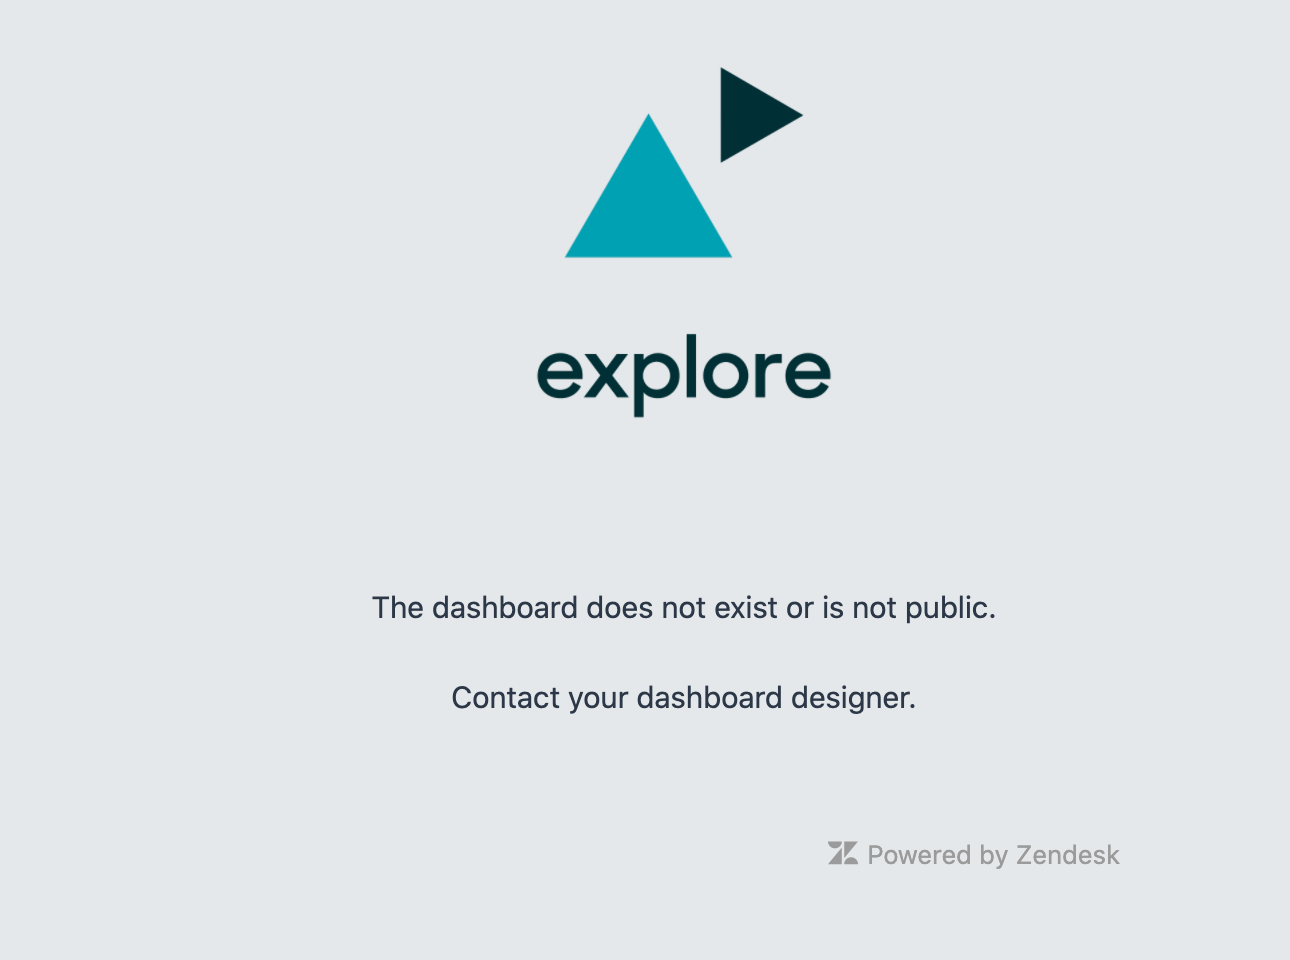 Exploreのエラーメッセージ - ダッシュボードが存在しないか、公開されていません。ダッシュボード設計者に連絡する